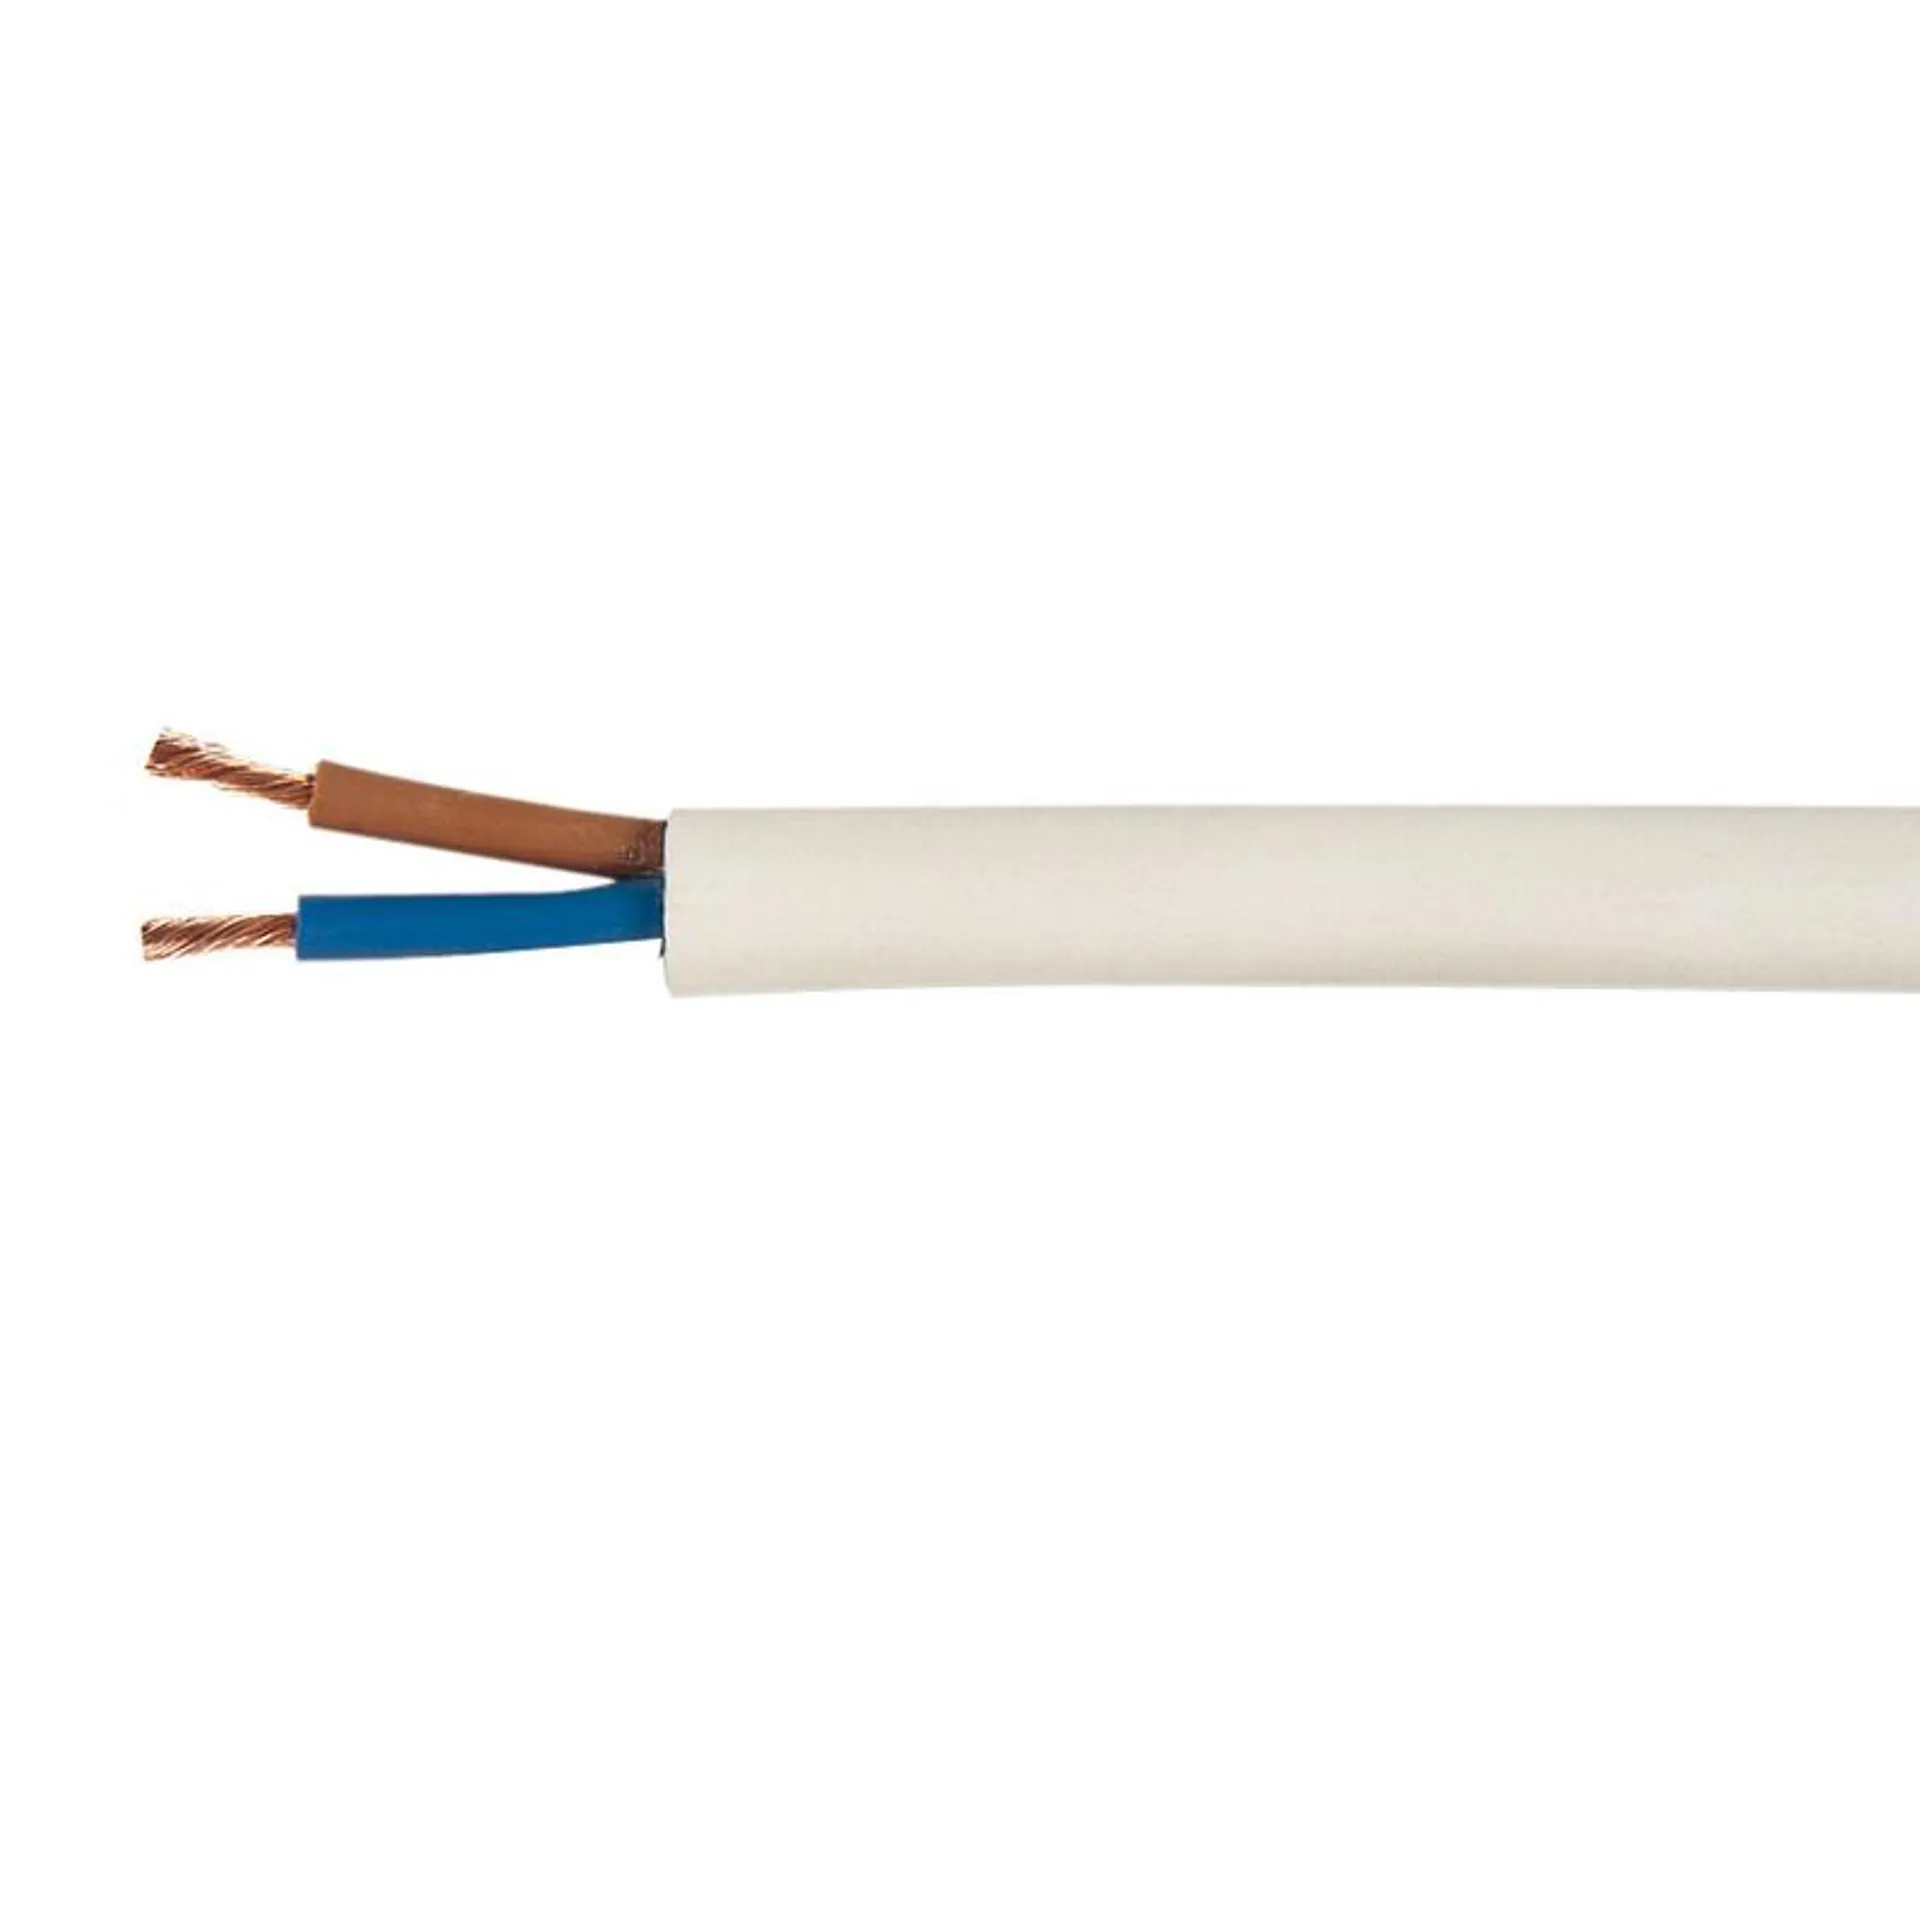 Cable eléctrico CEMI manguera blanca UNE H05 VVF